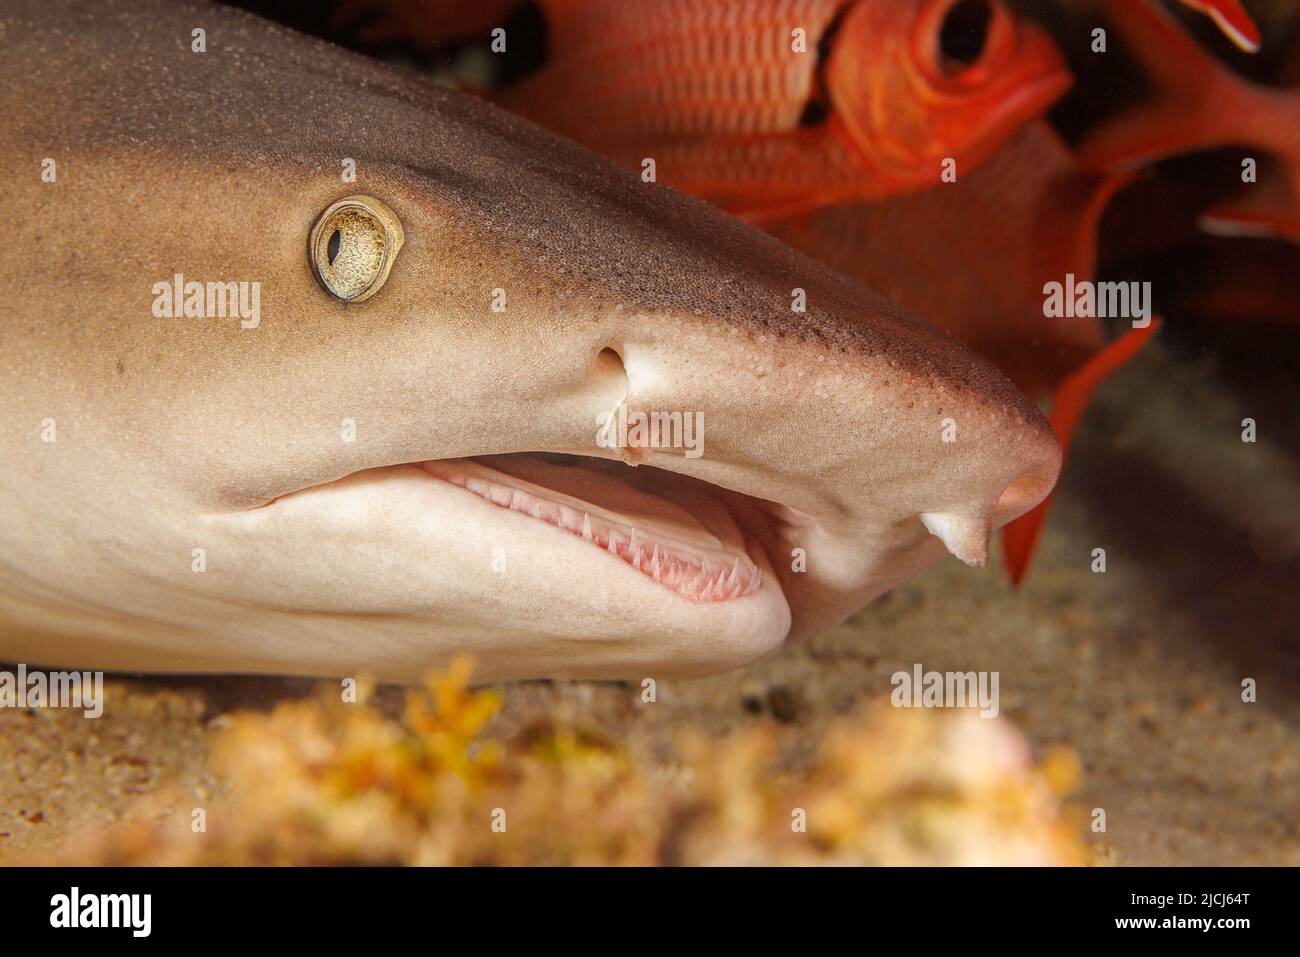 Whitetip gli squali, Triaenodon obesus, sono una delle poche specie di squali che possono sostare e riposare sul fondo, Hawaii. Foto Stock